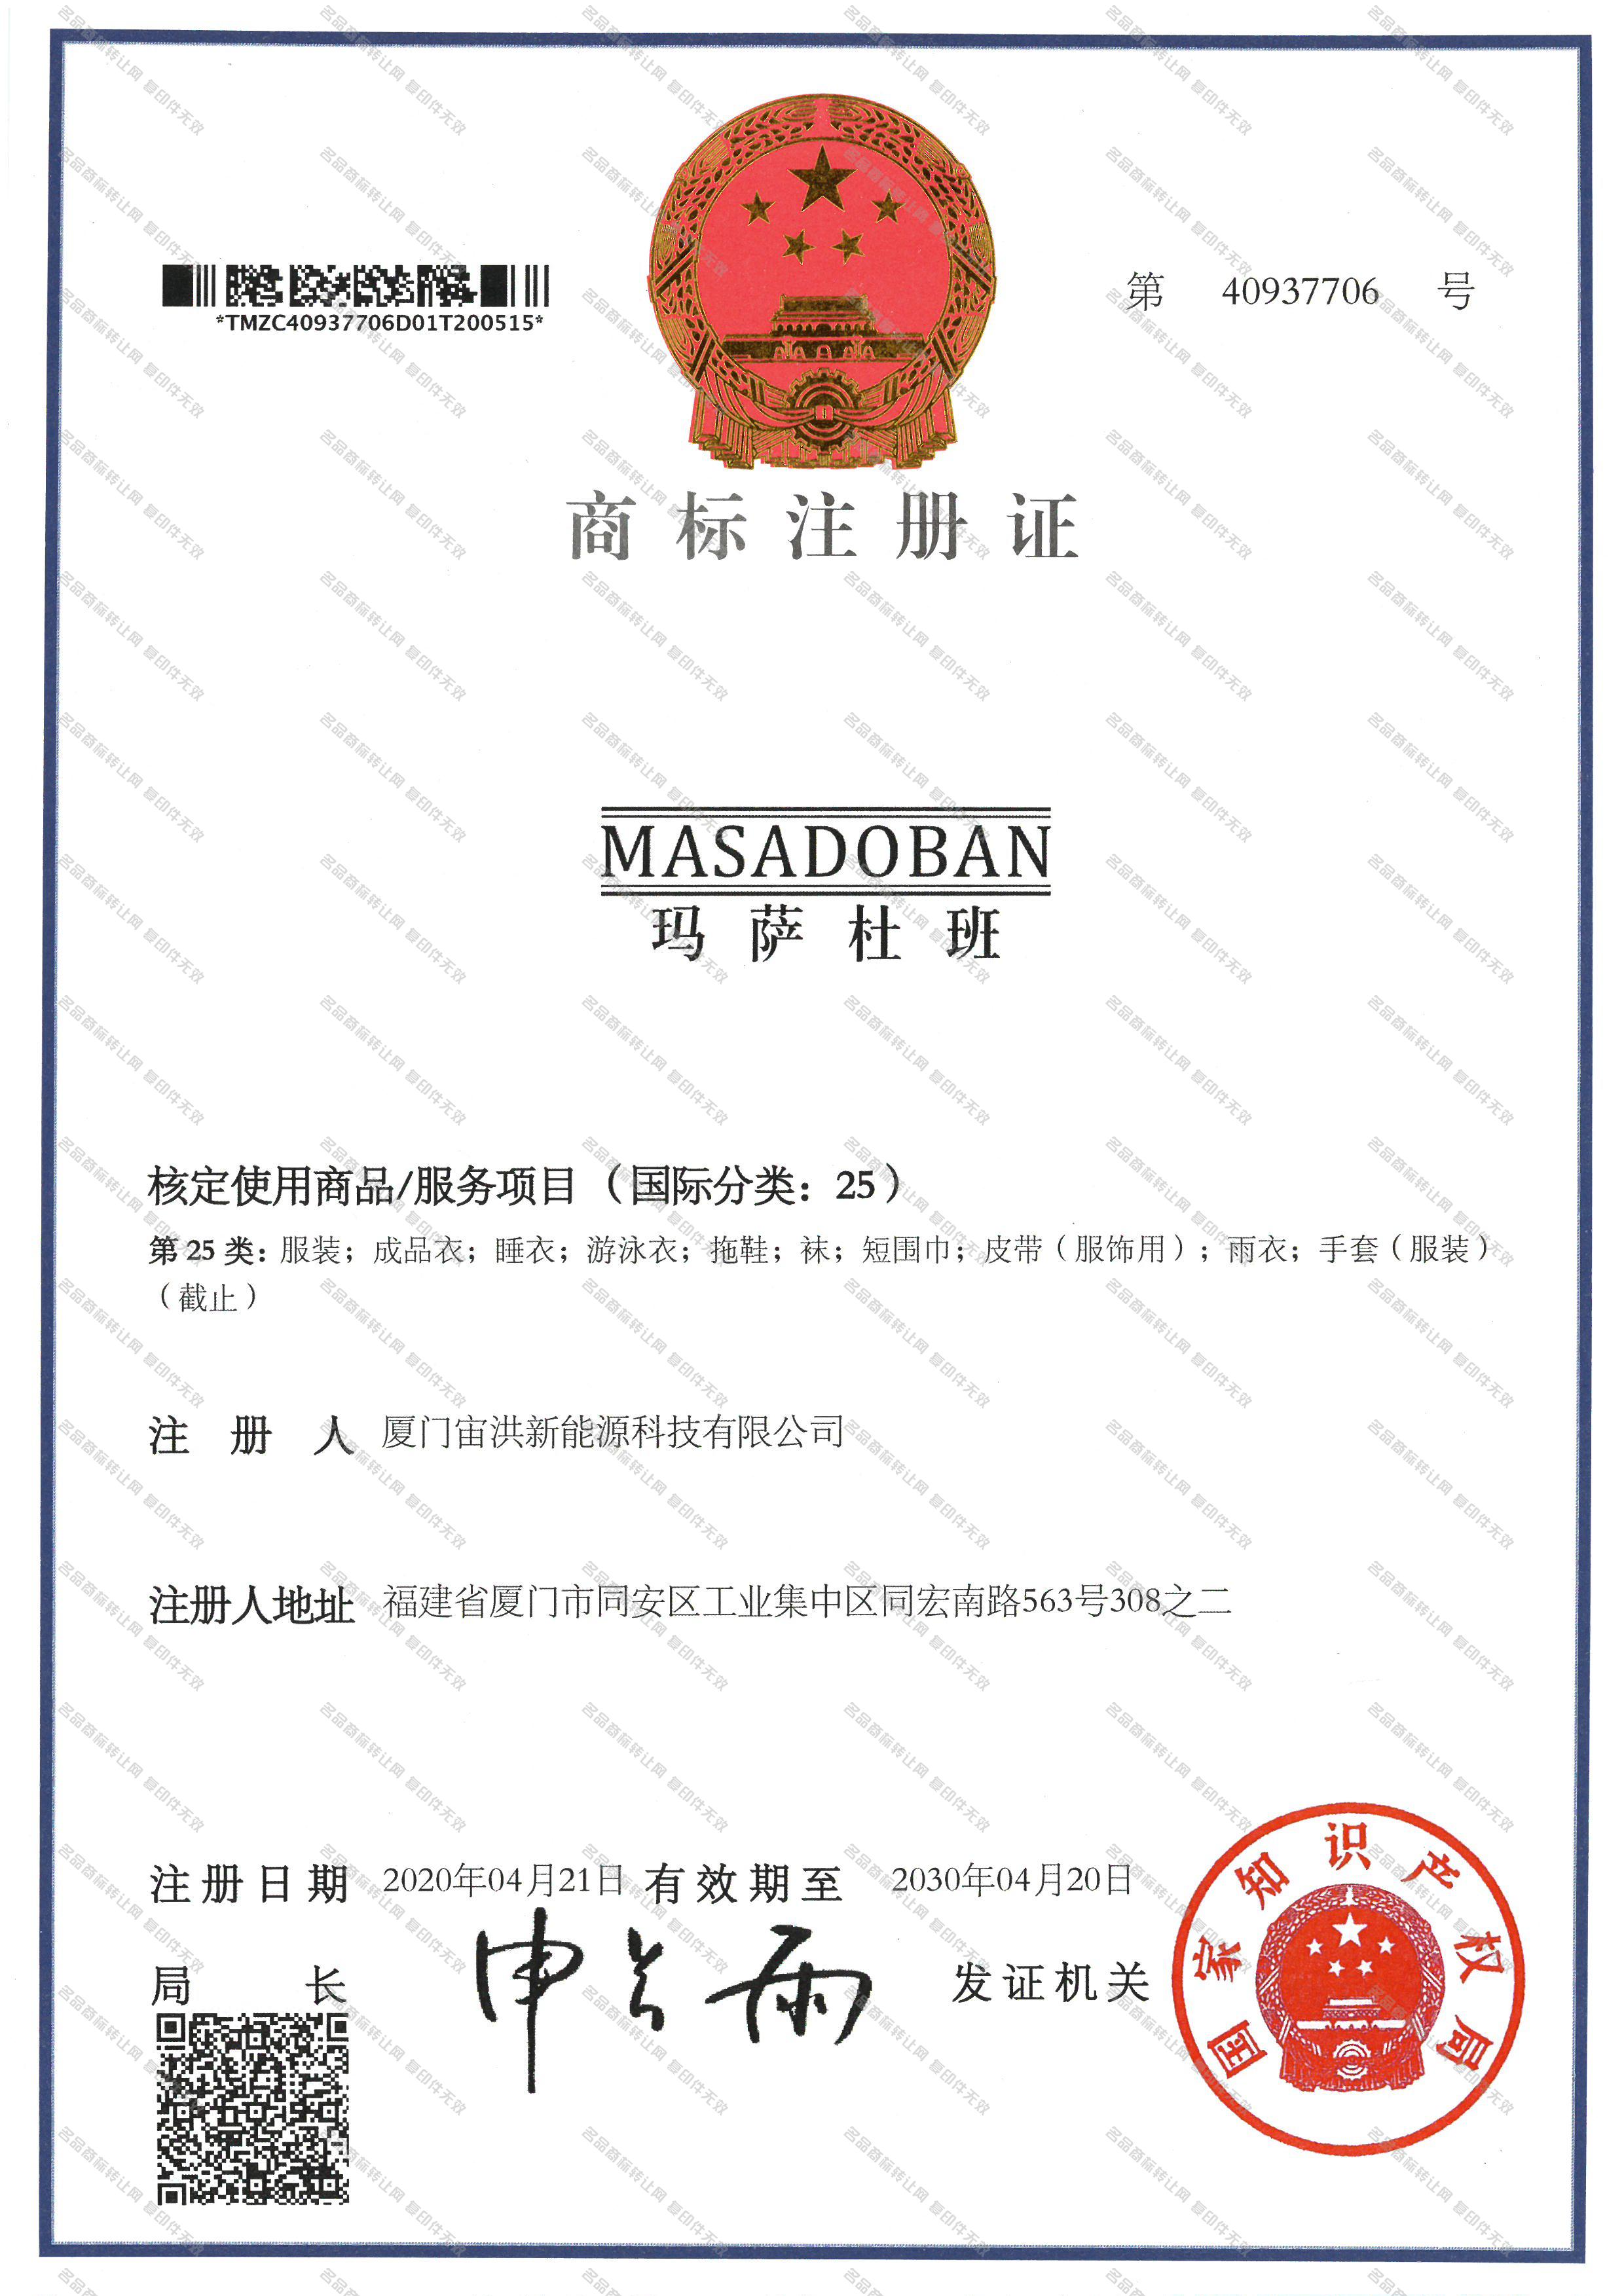 玛萨杜班 MASADOBAN注册证